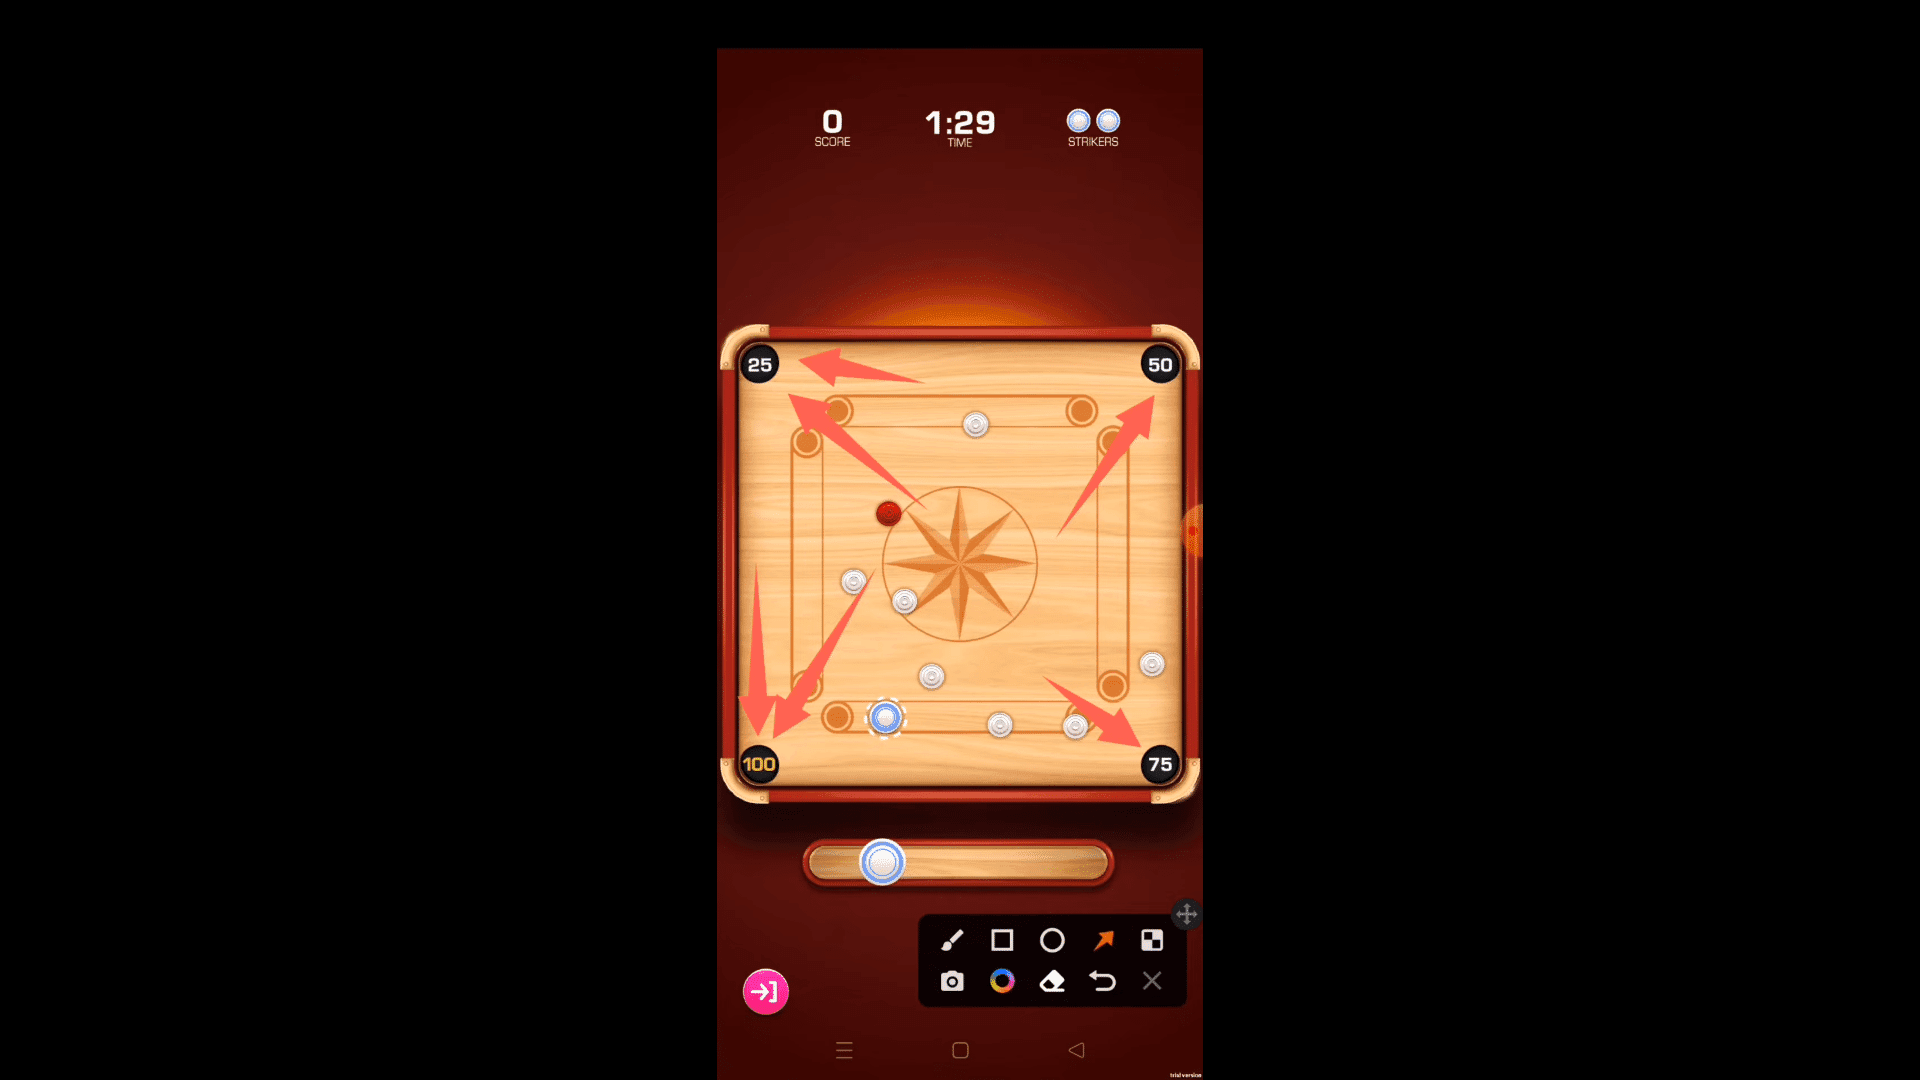 Carrom Blitz belebt das Carrom-Gameplay in einem kostenlosen Android-Spiel von Joyride Games neu und verleiht dem klassischen Erlebnis neue Spannung.